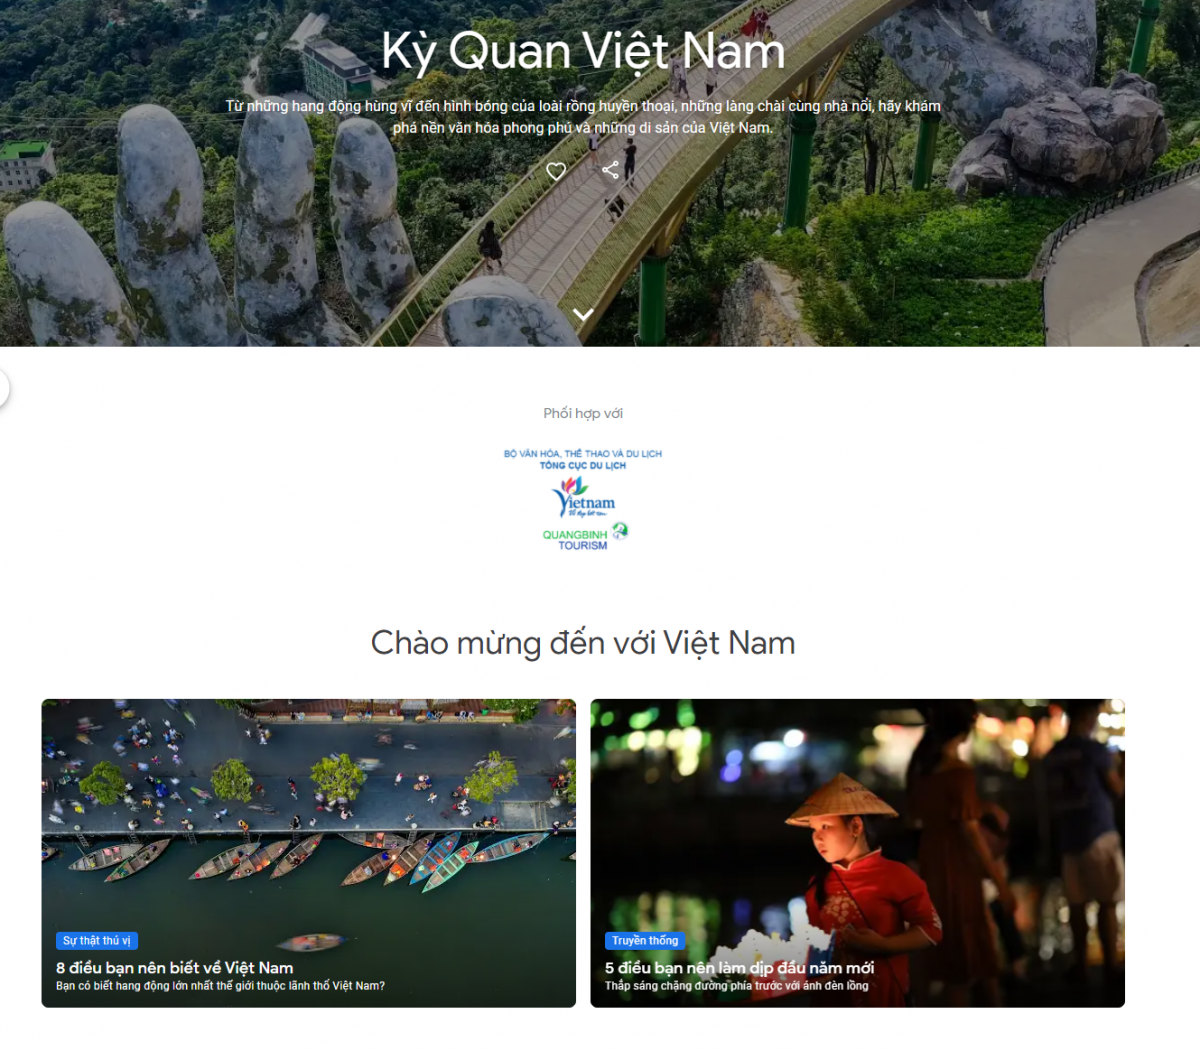 Giao diện website dự án “Kỳ quan Việt Nam“. Nguồn: Google